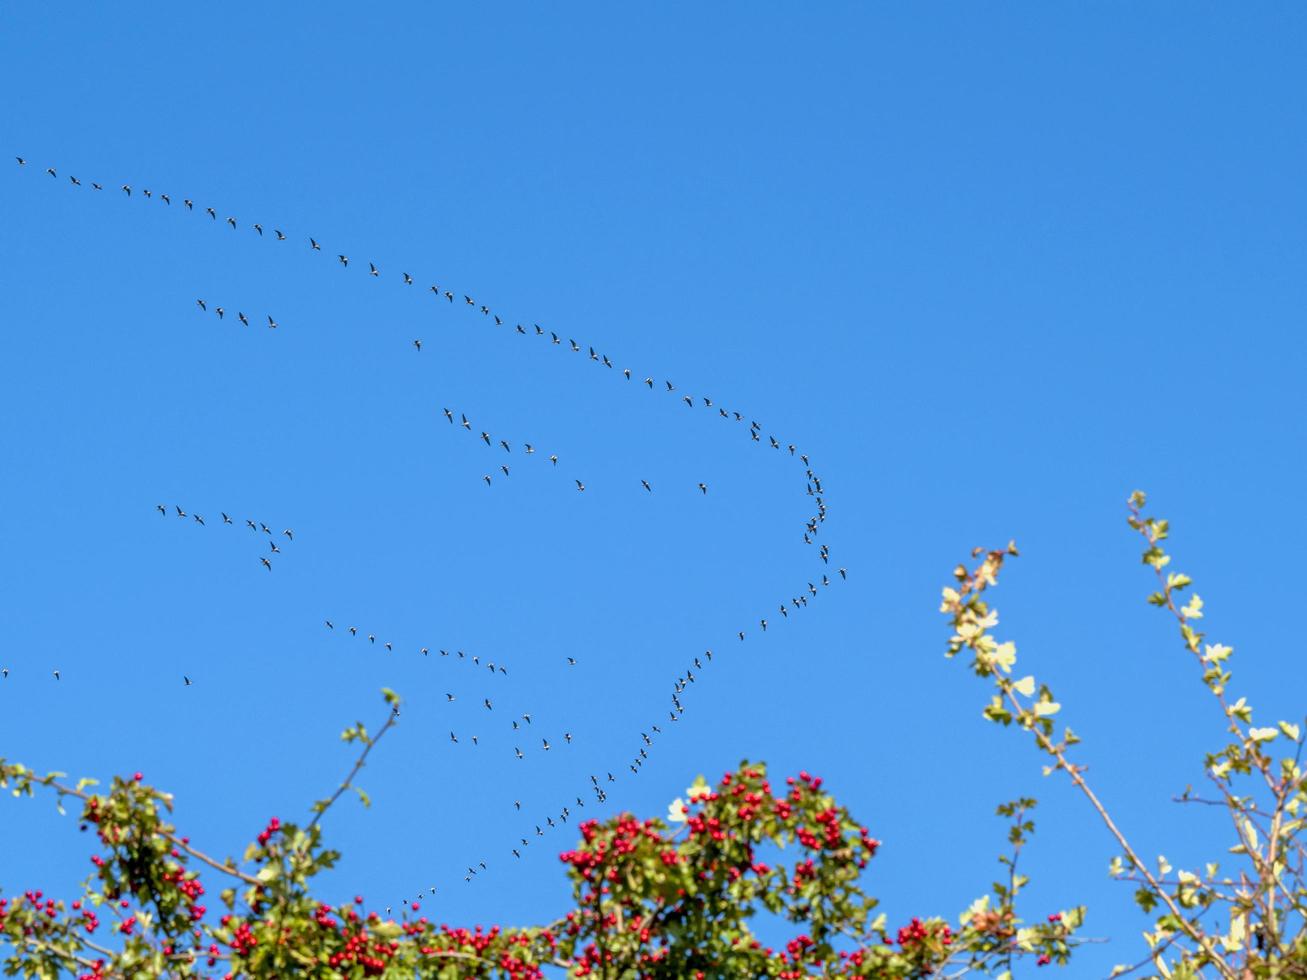 meadas de gansos em formação em um céu azul foto